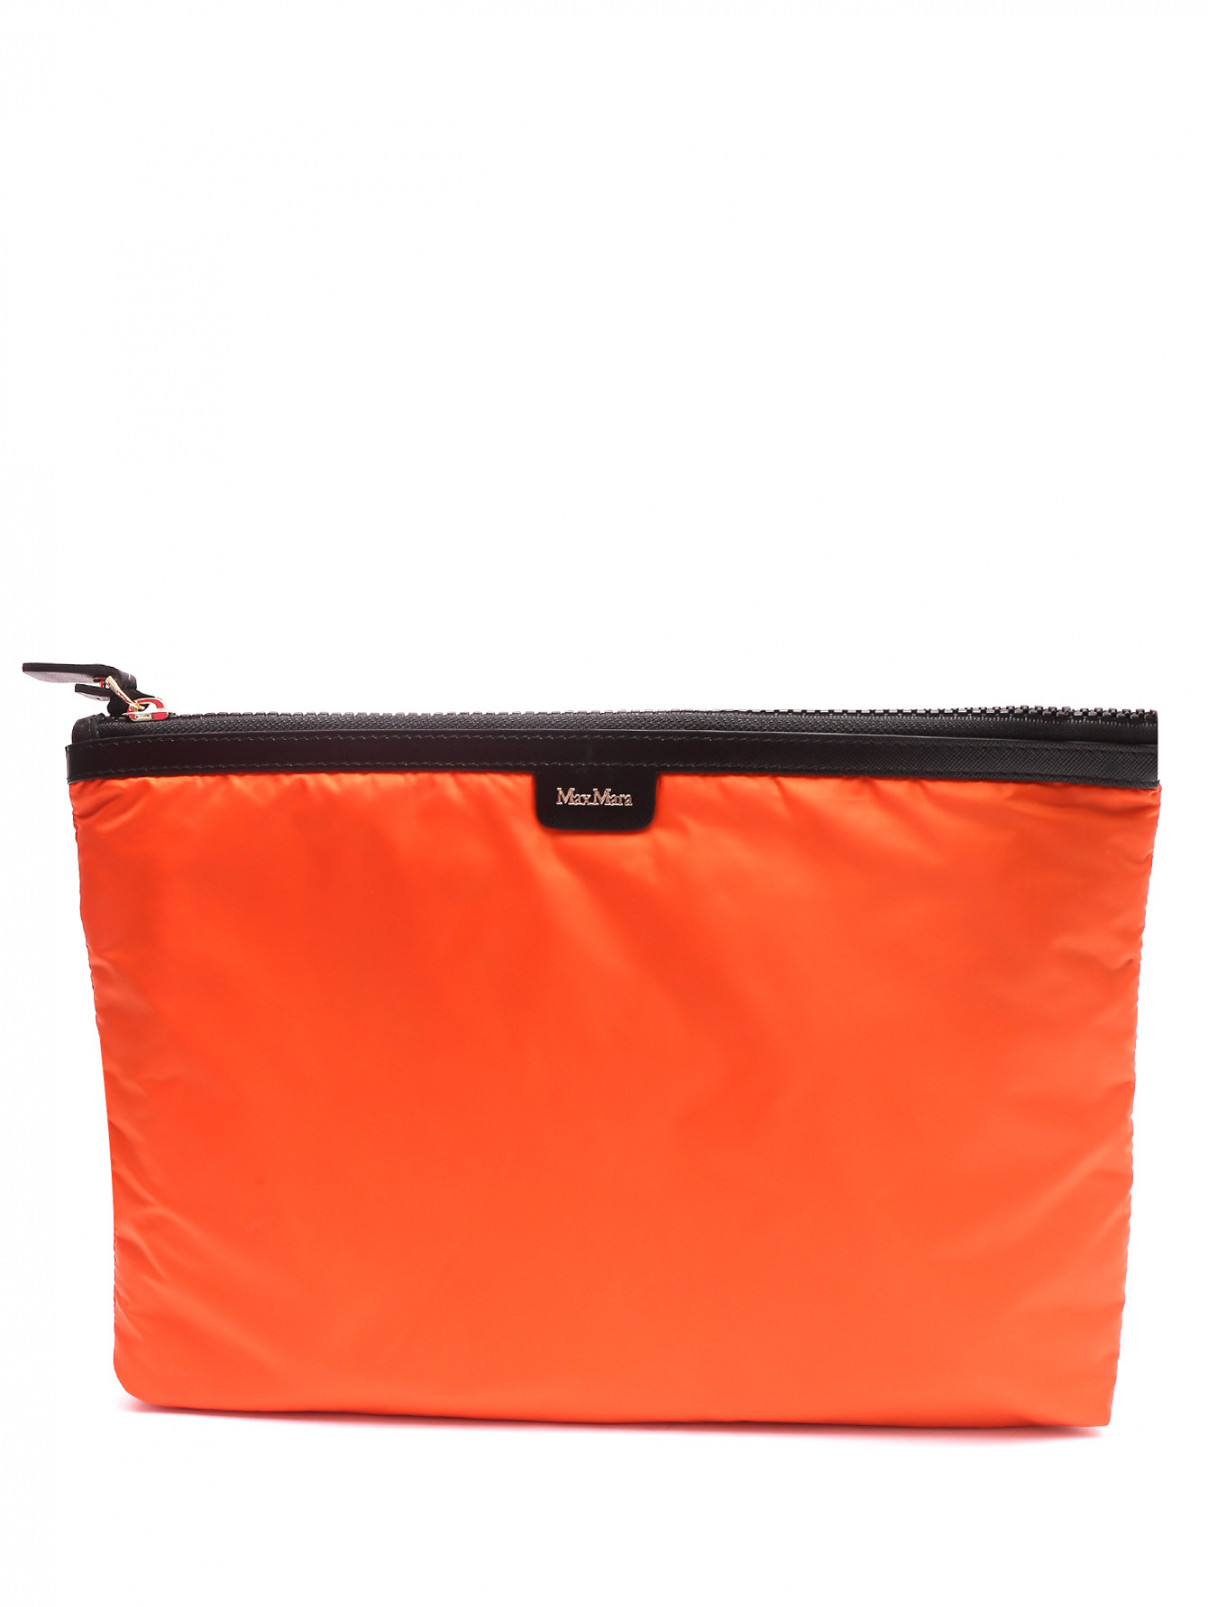 Мягкая нейлоновая сумка Max Mara  –  Общий вид  – Цвет:  Оранжевый